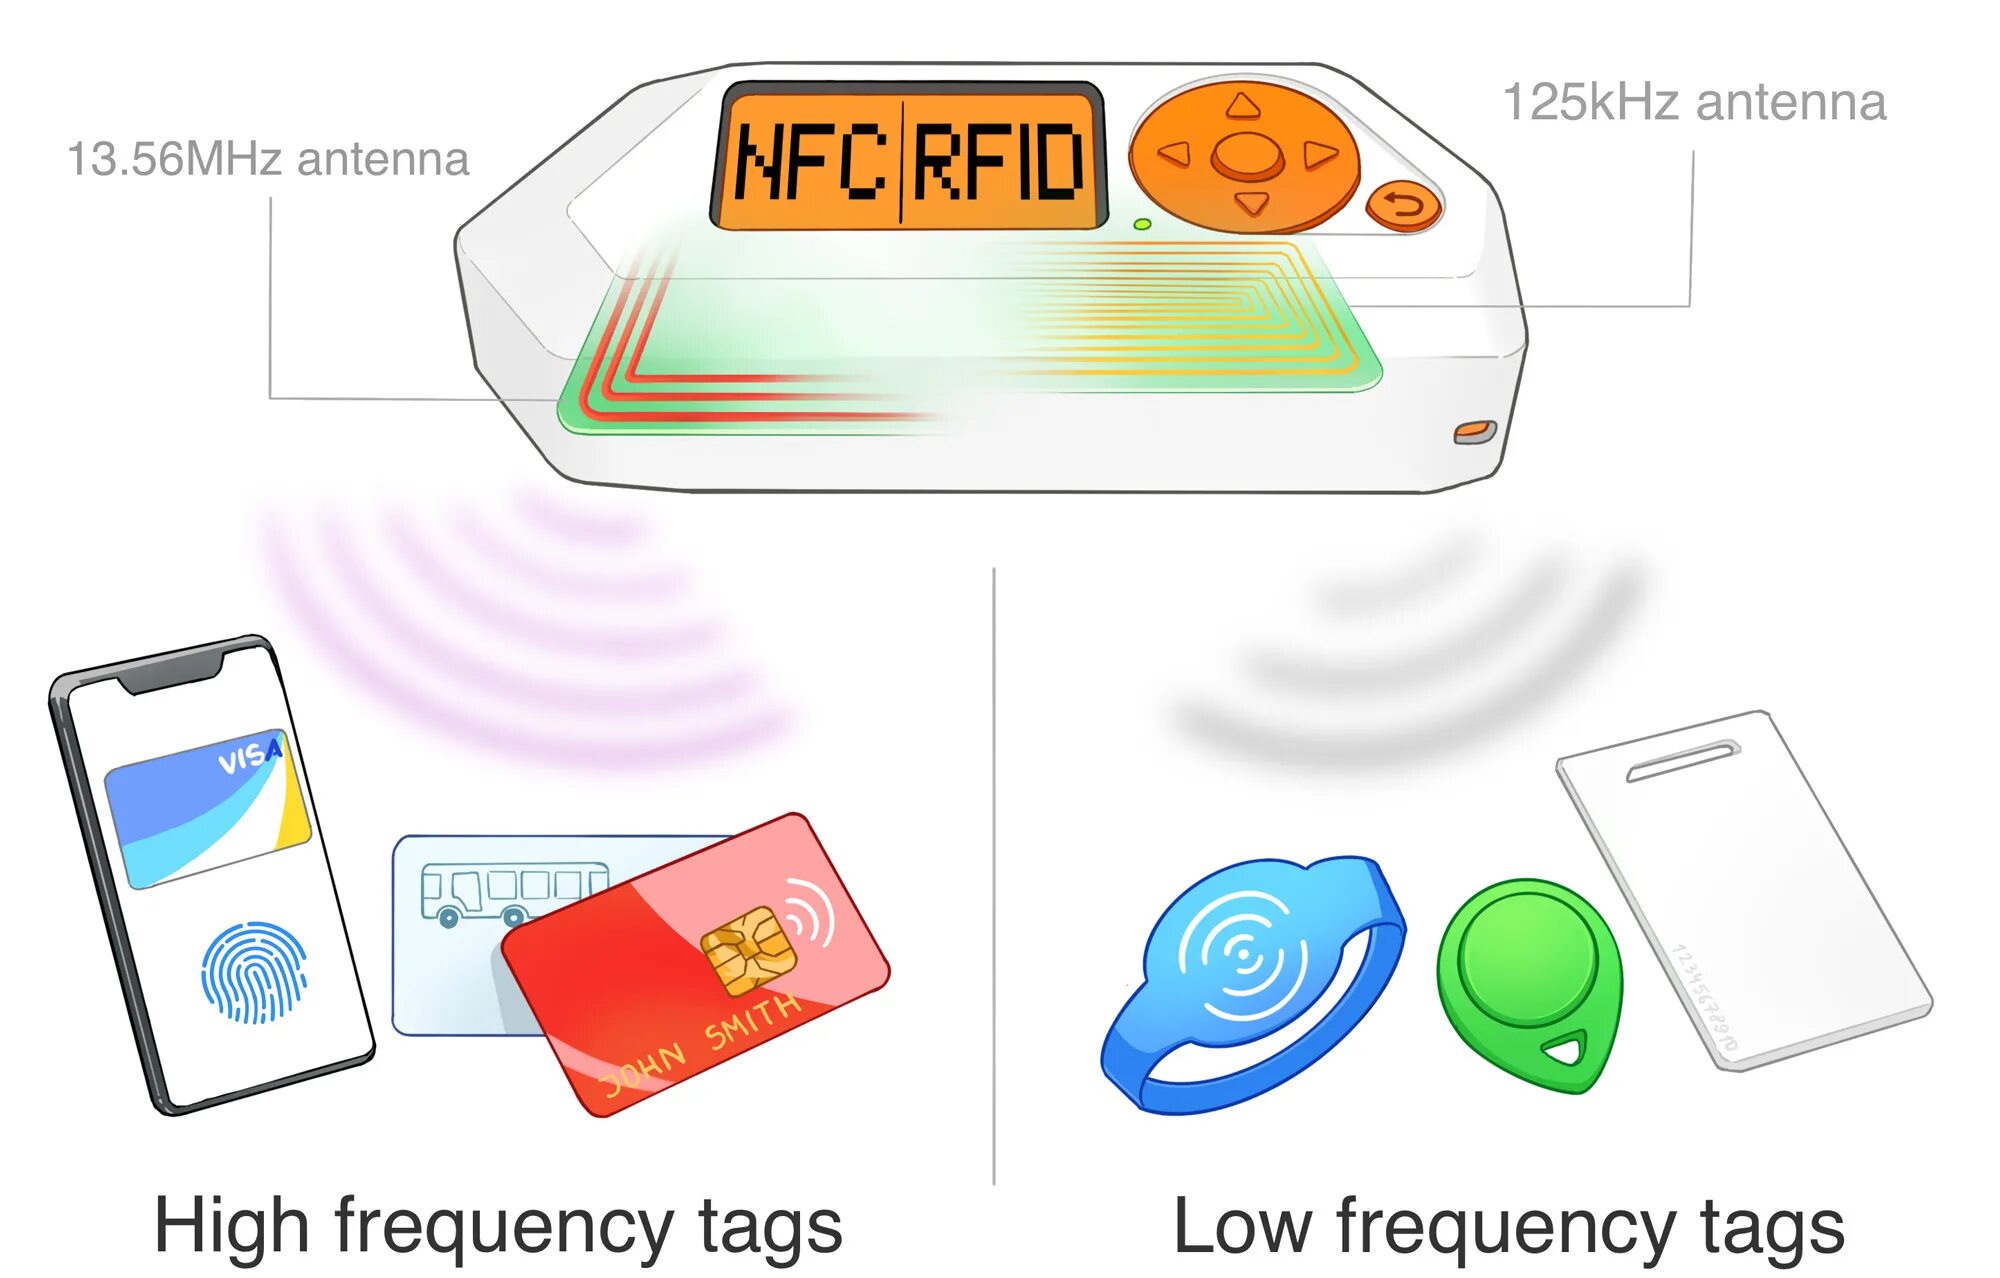 Тамагочи Флиппер Zero. Тамагочи для хакеров Flipper Zero. RFID протокол. NFC метка для бесконтактной оплаты.